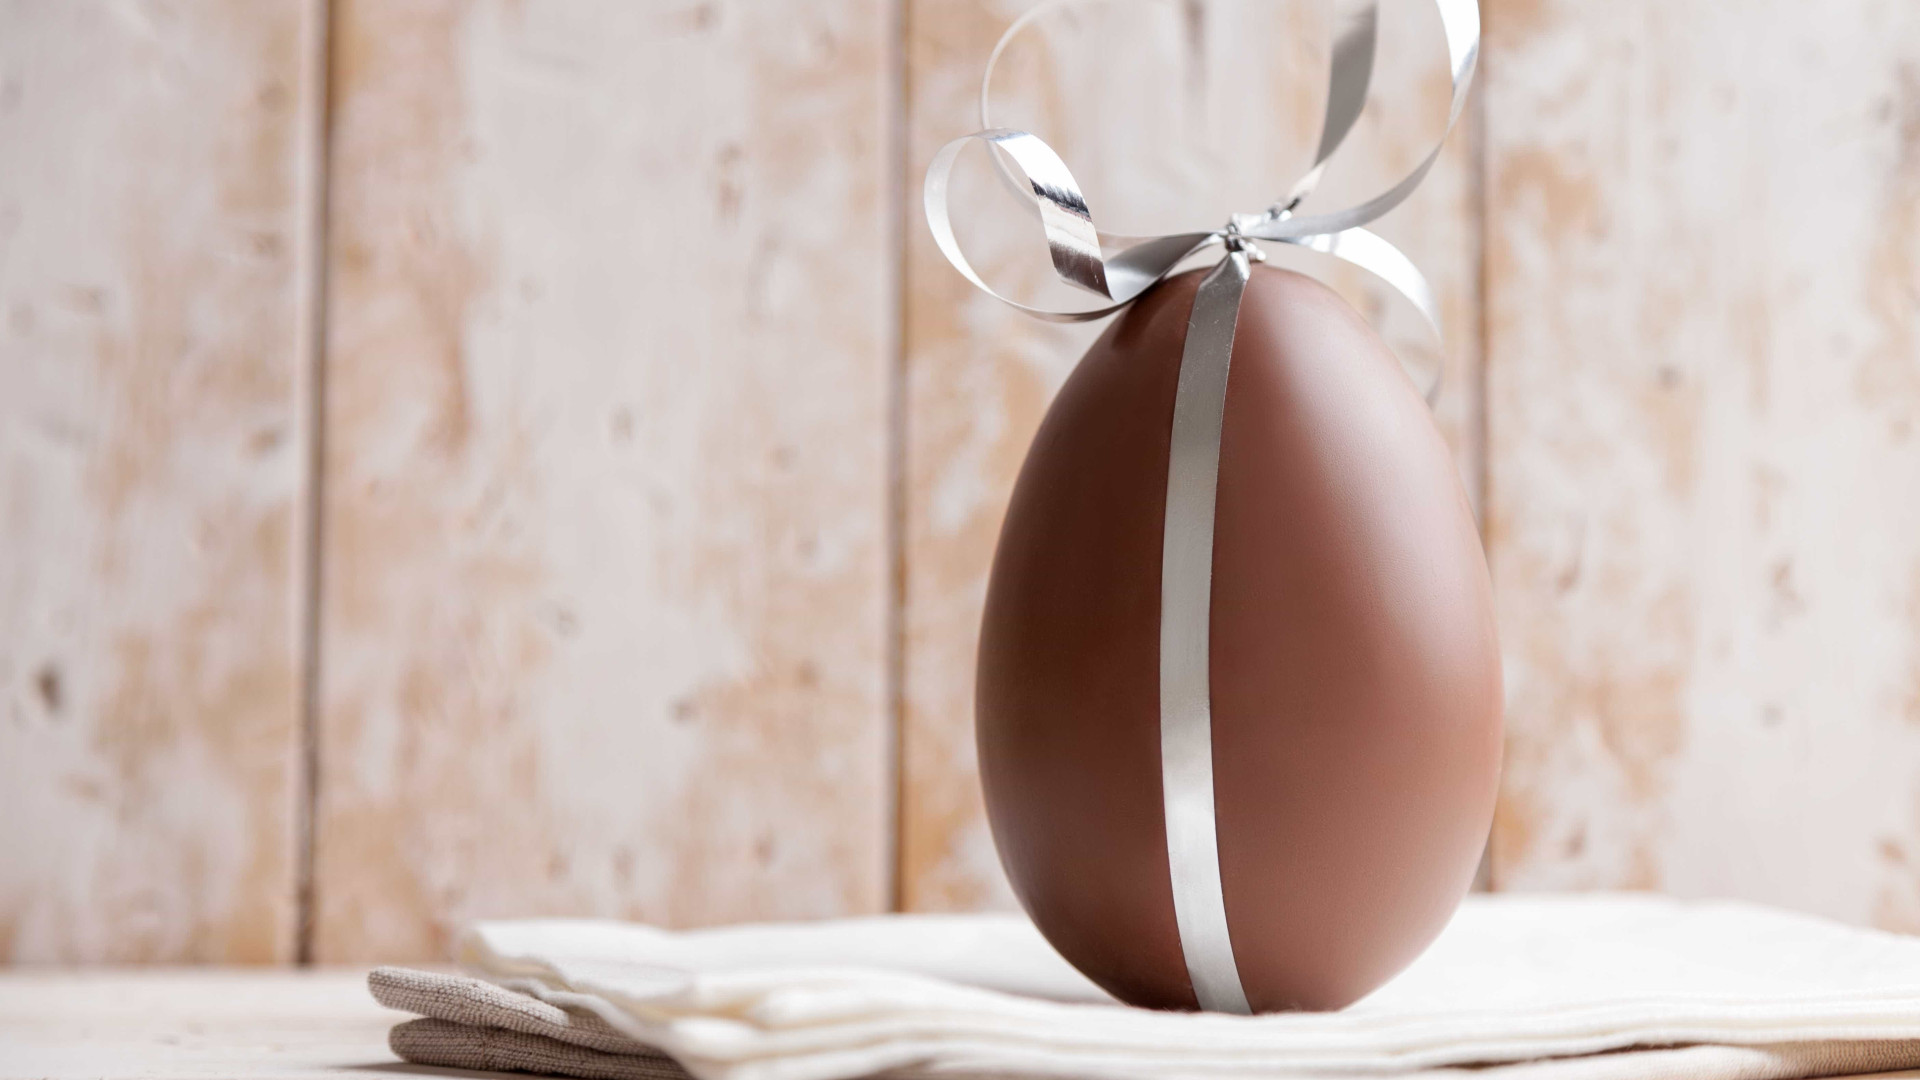 Quatro pessoas são presas por vender ovos de Páscoa com maconha no RS